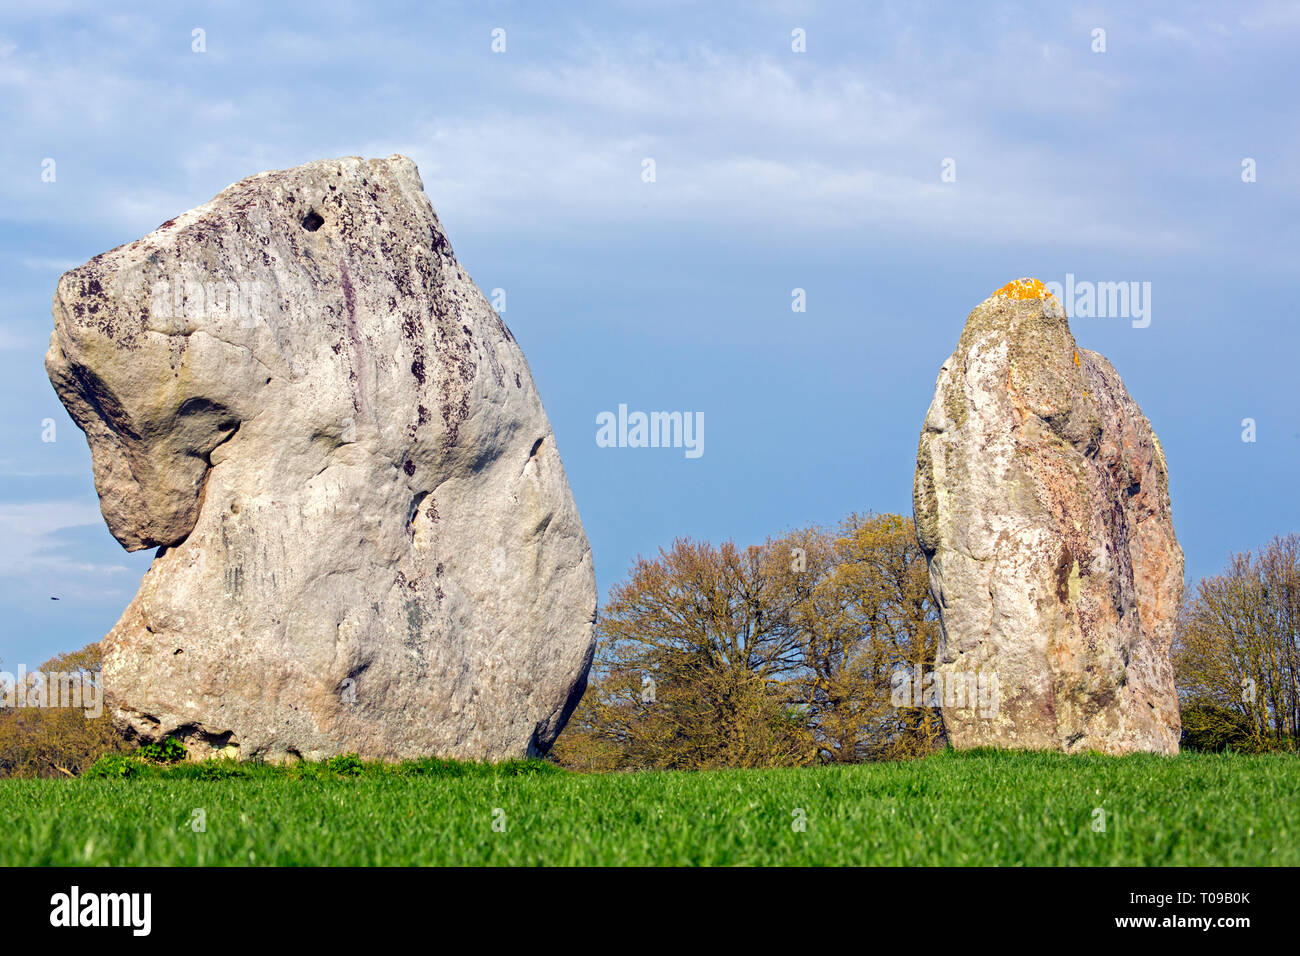 Gran Bretaña, Inglaterra, de piedra de Avebury. Grandes megalitos de piedra arenisca, similar a una cabeza de león. Foto de stock